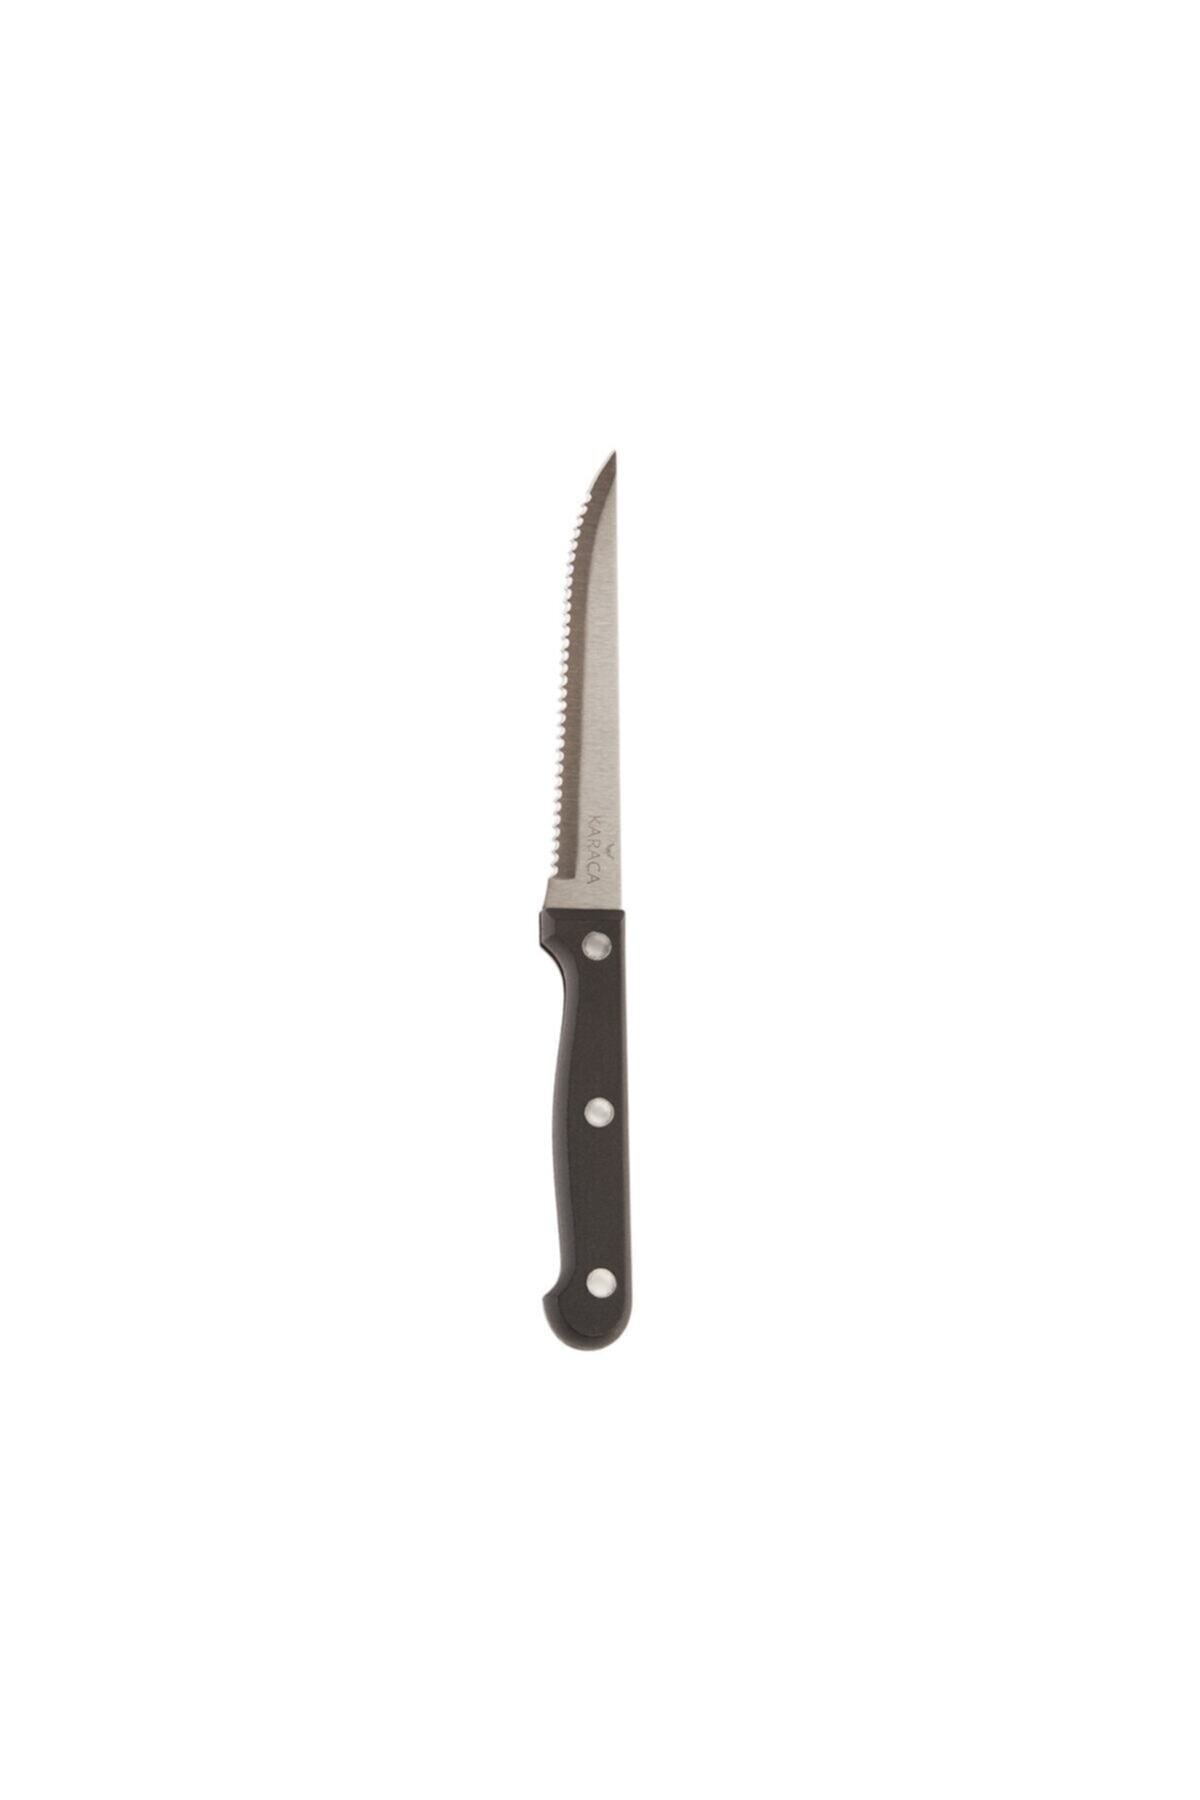 چاقوی استیک 7 پارچه تانگ کاراجا Karaca